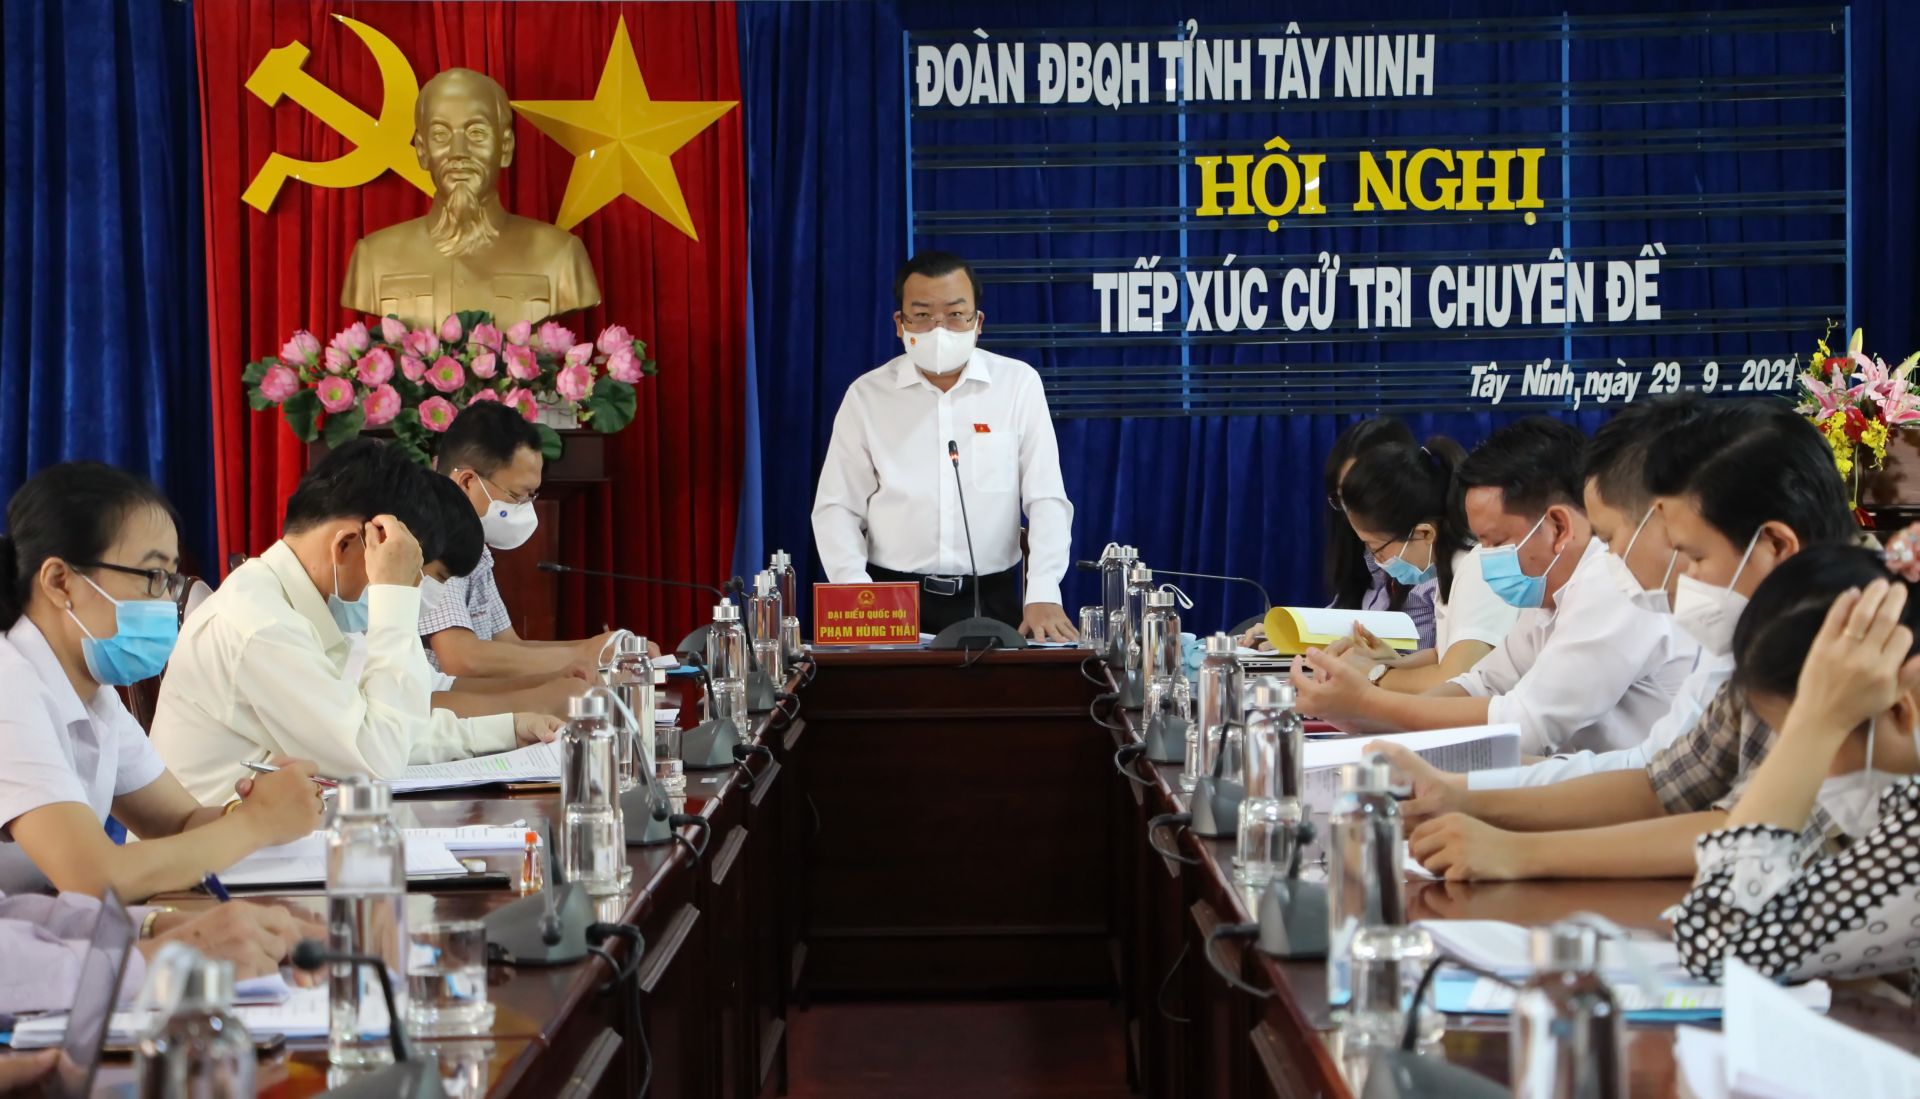 Điểm báo in Tây Ninh ngày 04.10.2021